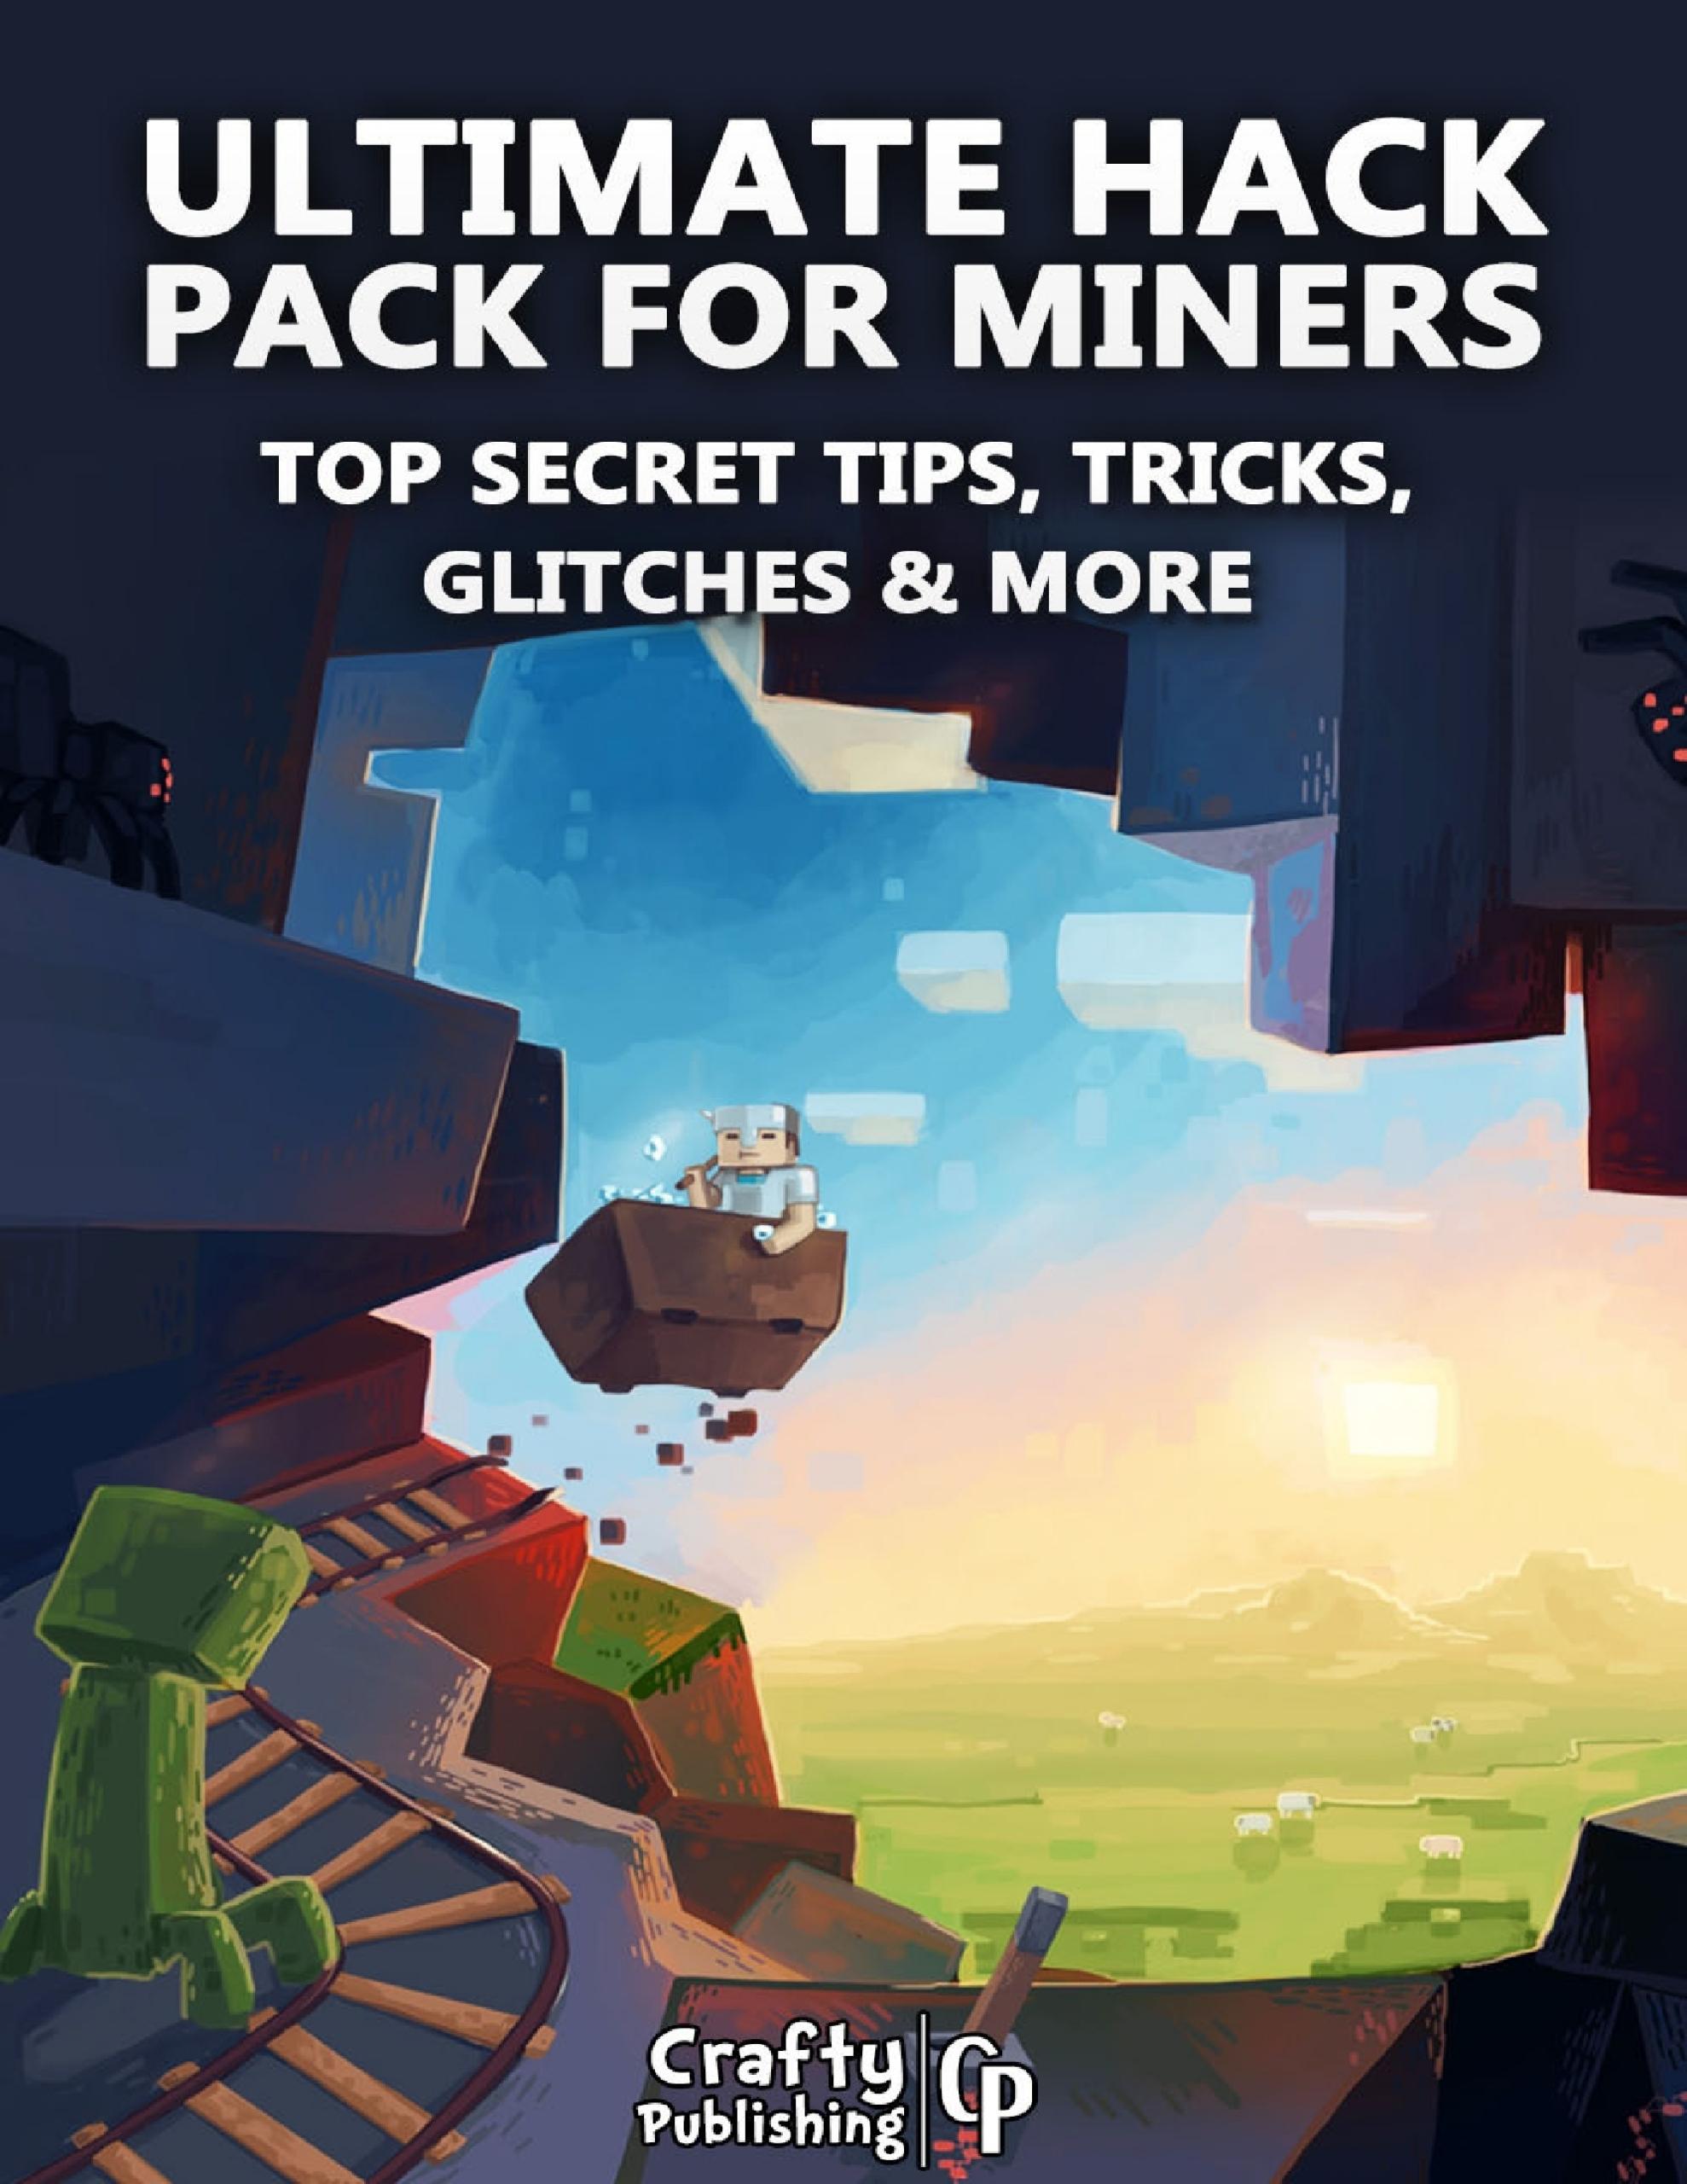 Download Ultimate Hack Pack for Miners Top Secret Tips, Tricks